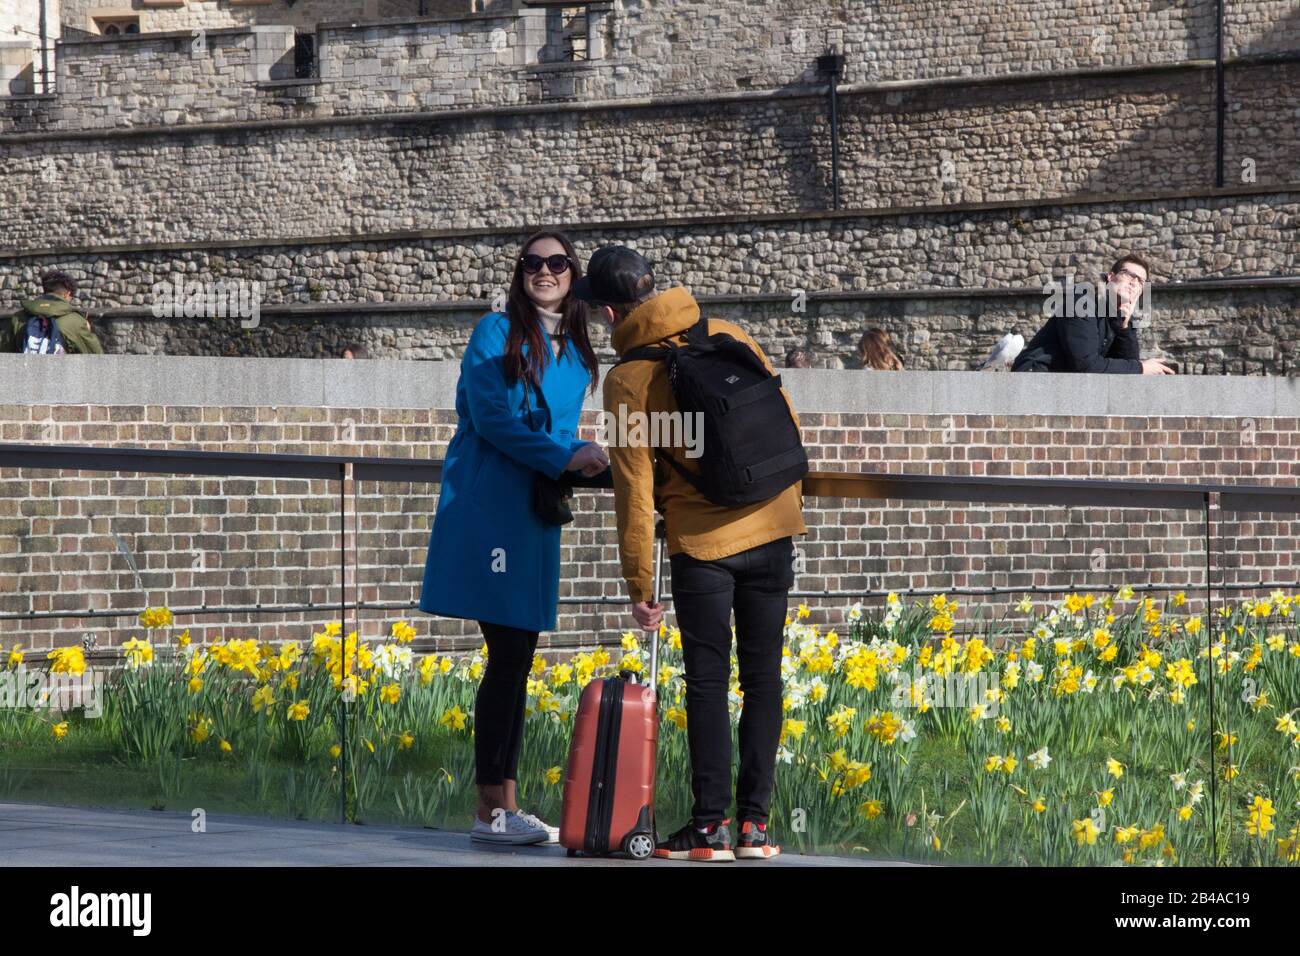 Londres, Royaume-Uni. 6 mars 2020. Les touristes ont profité d'une journée ensoleillée pour visiter la Tour de Londres sans porter de masques, montrant une attitude "comme d'habitude" à l'égard du Corvid-19 coronavirus. Anna Watson/Alay Live News Banque D'Images